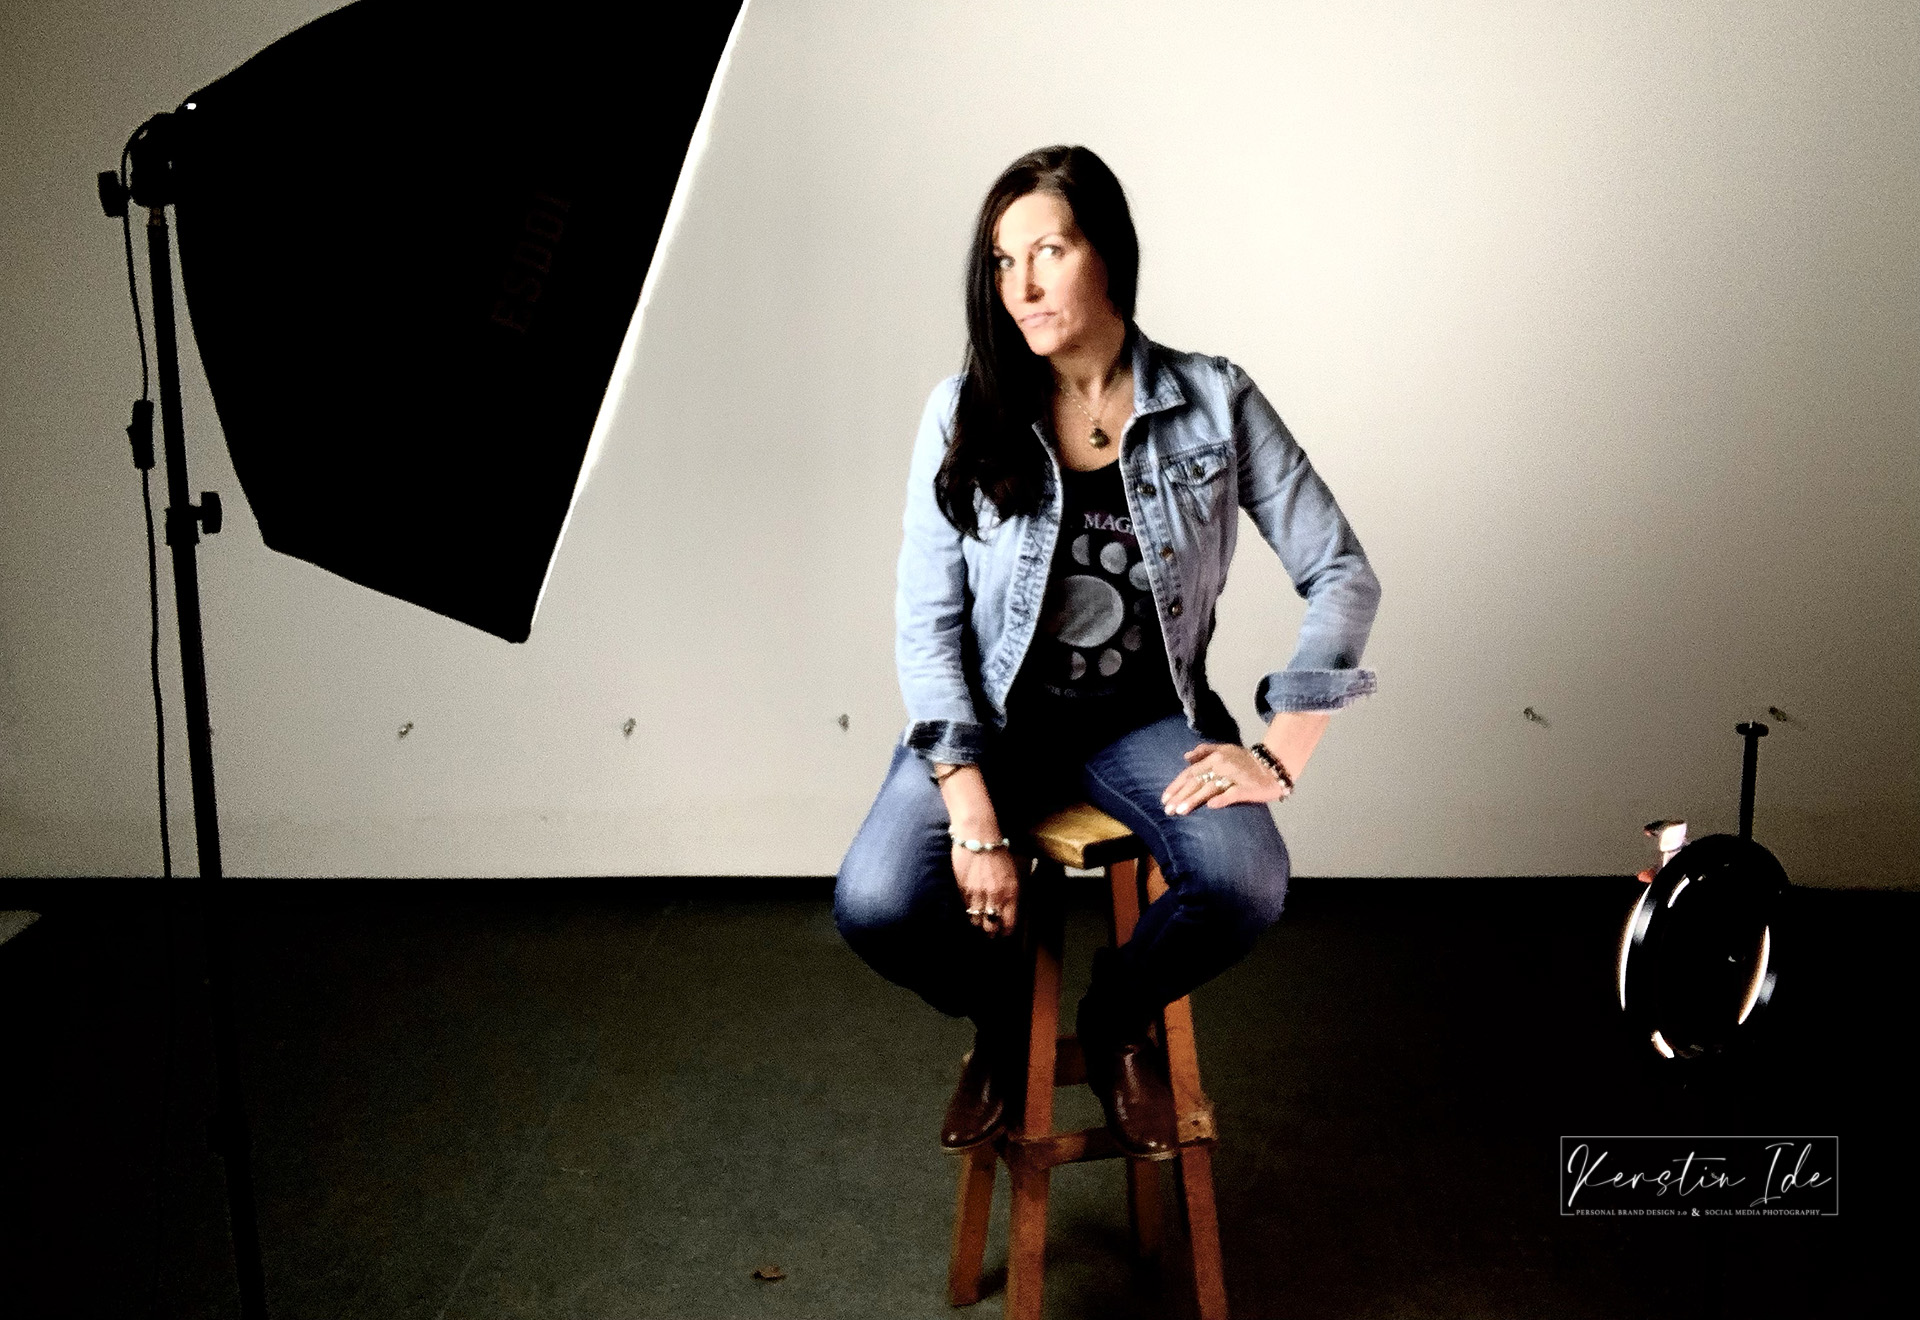 Kerstin Ide, sitting in Photo Studio in the spotlight.